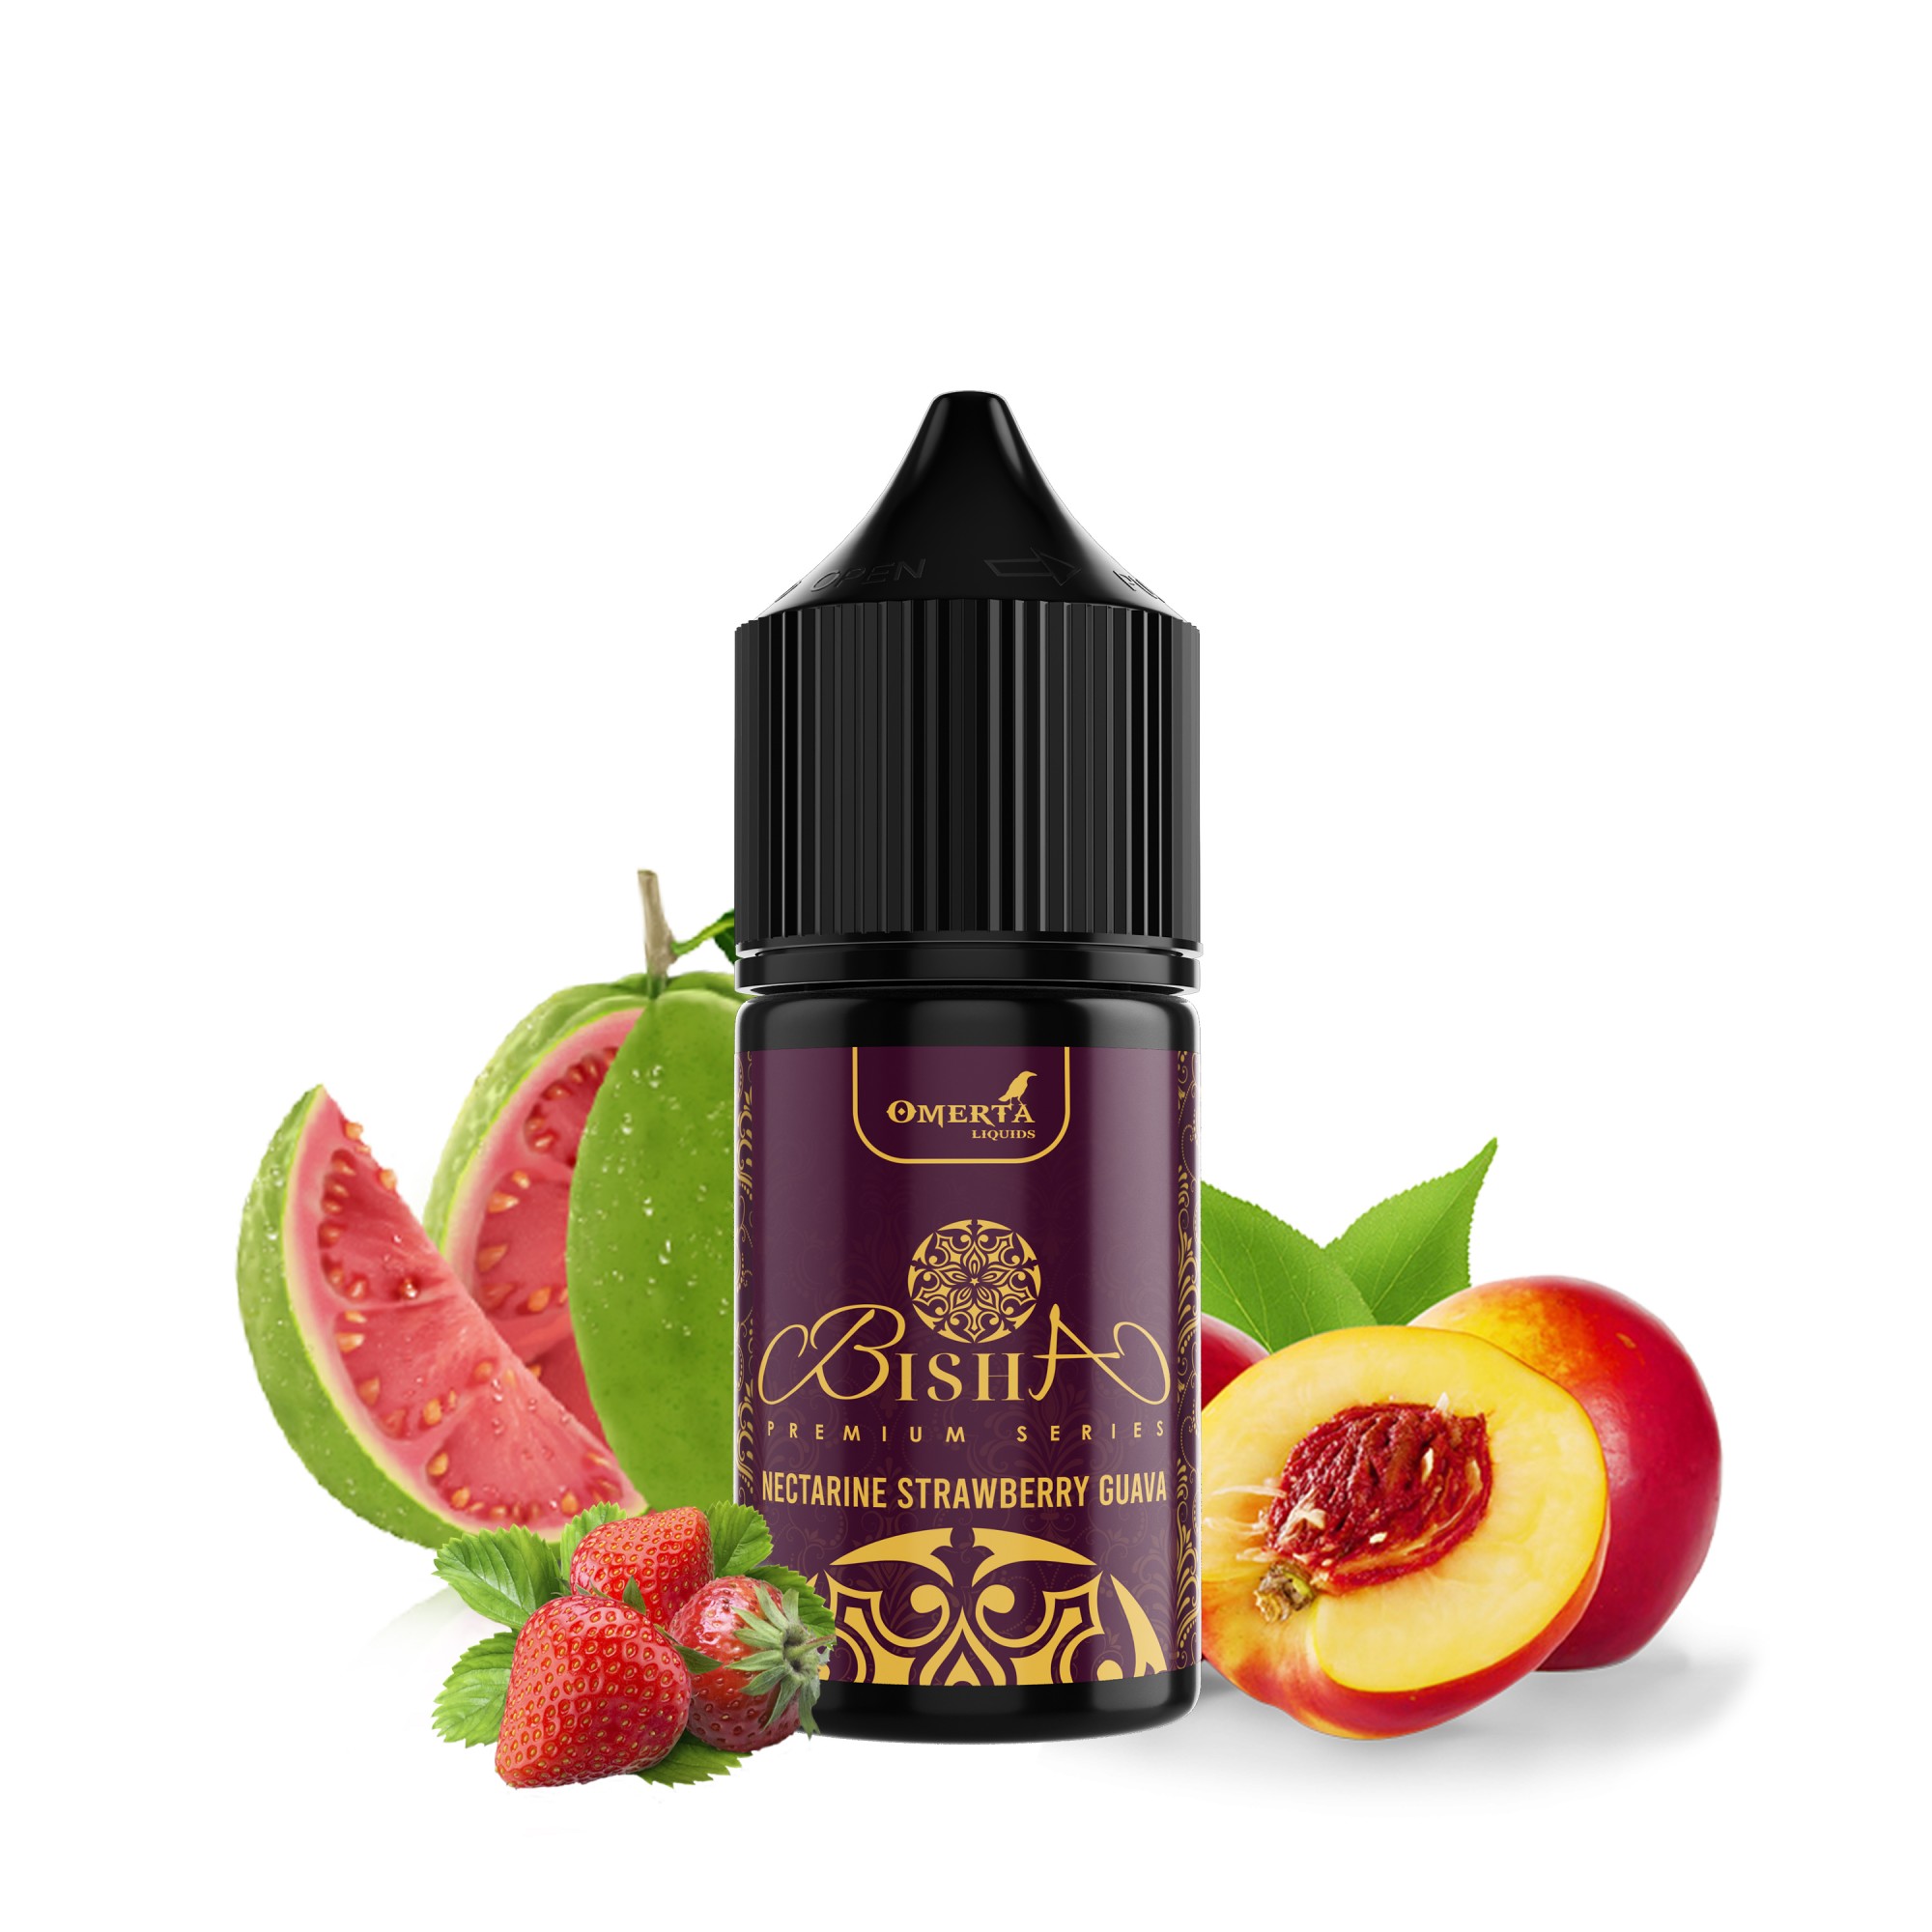 Bisha Nectarine Strawberry Guava 30